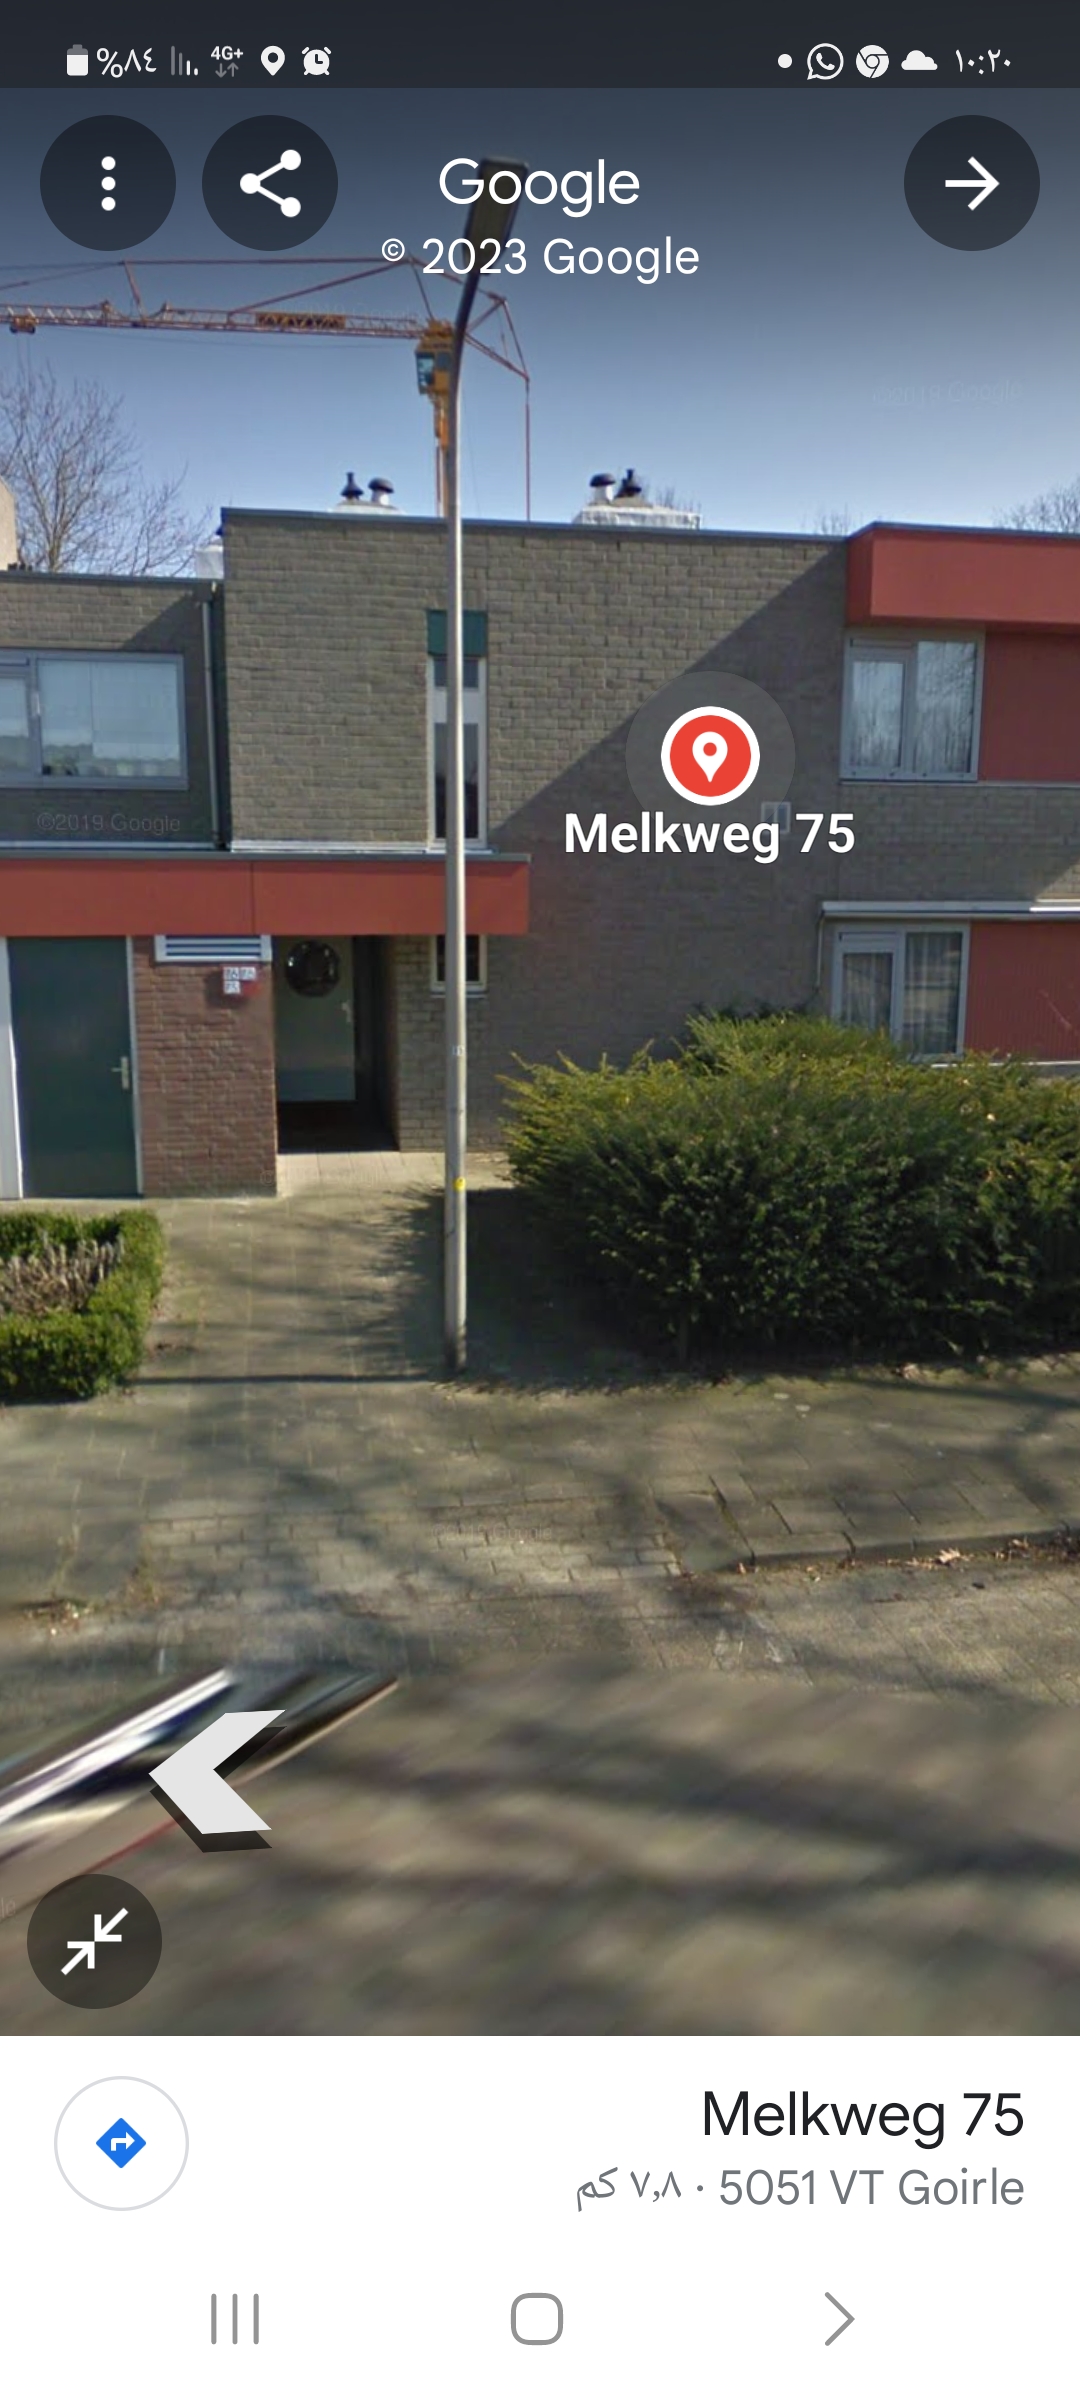 Melkweg 75, 5051 VT Goirle, Nederland